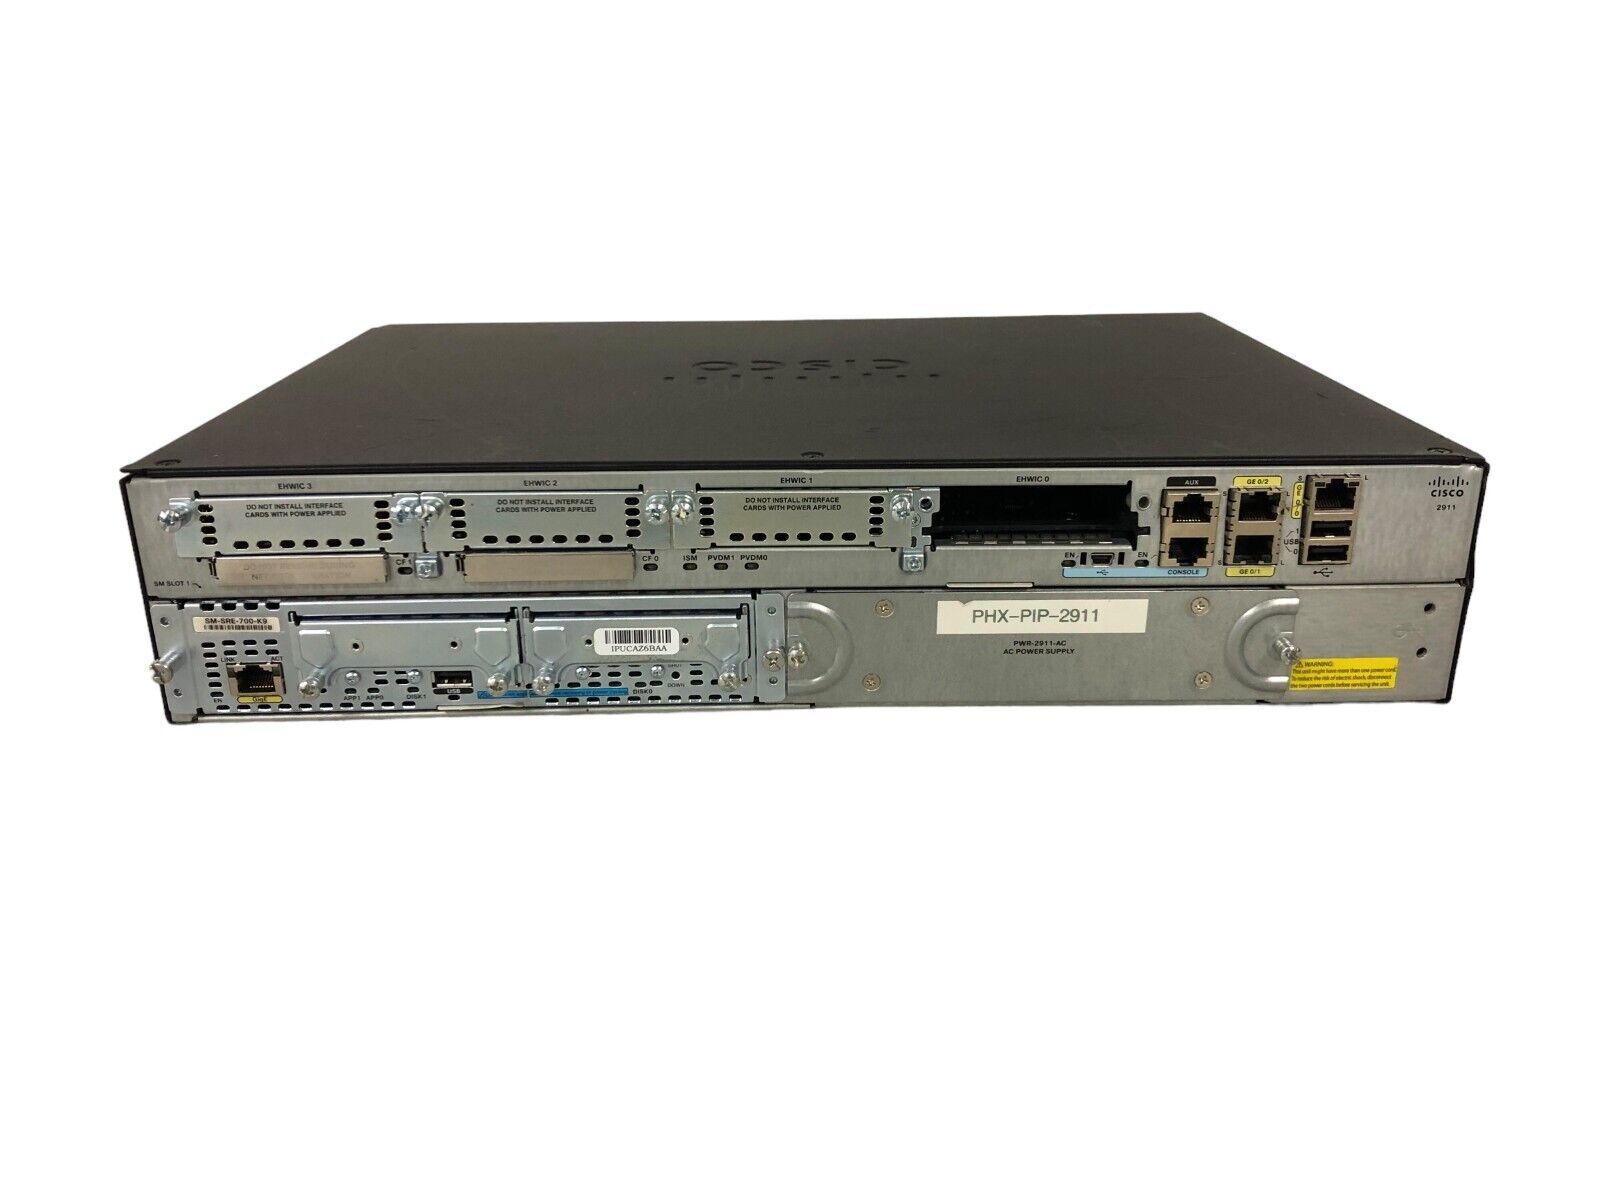 Cisco CISCO2911-SEC/K9 3 Port Security Bundle Router